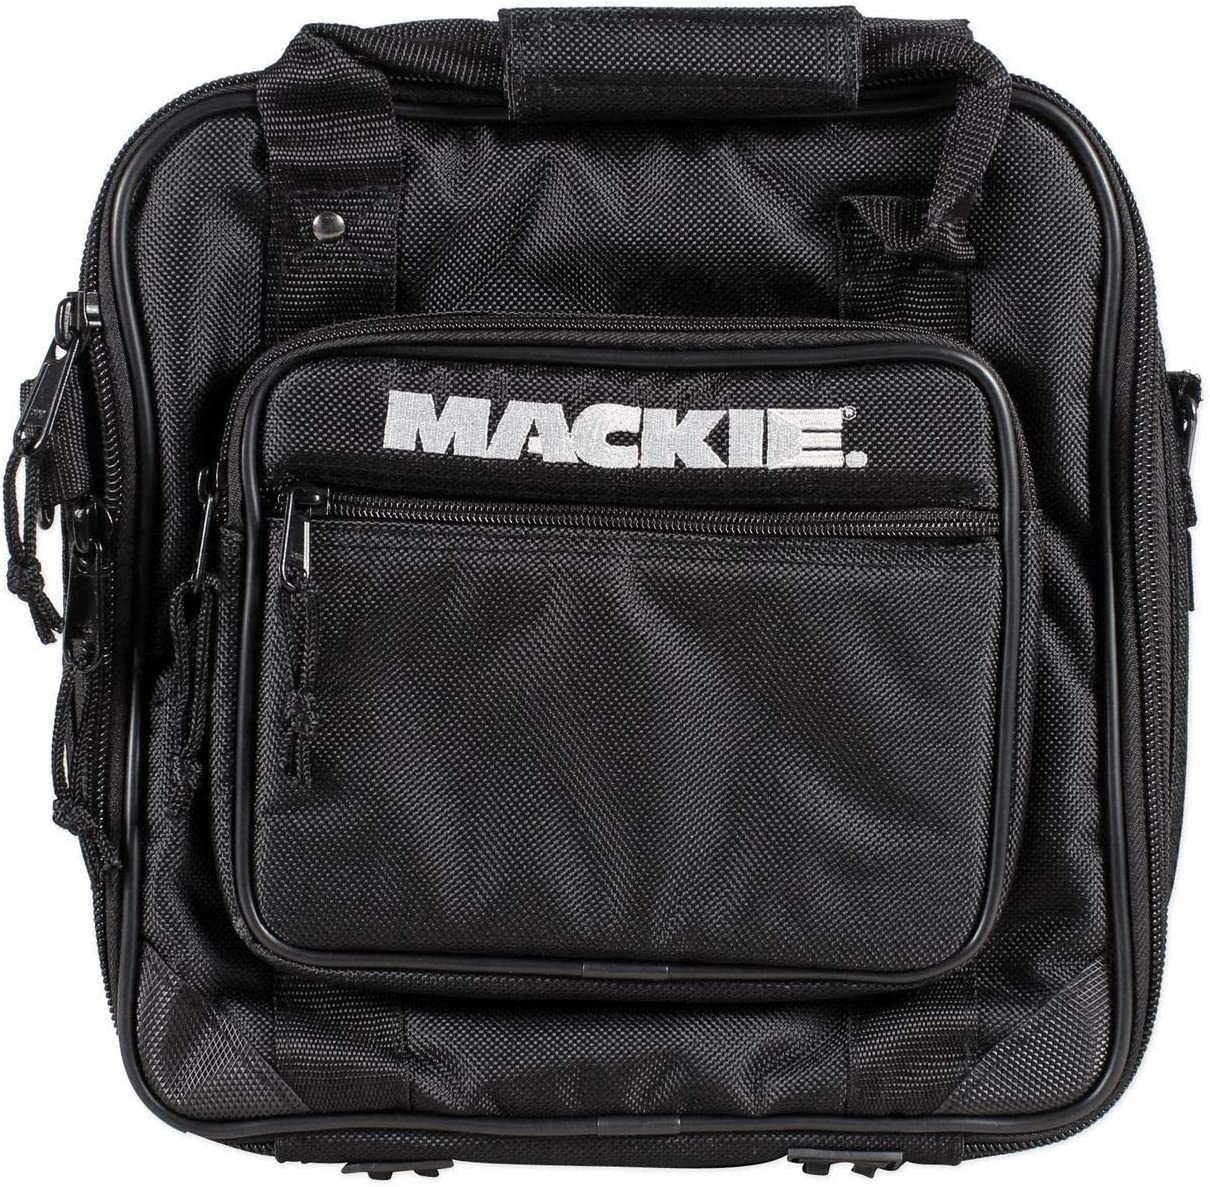 Mackie 1202 VLZ D Padded Mixer Bag